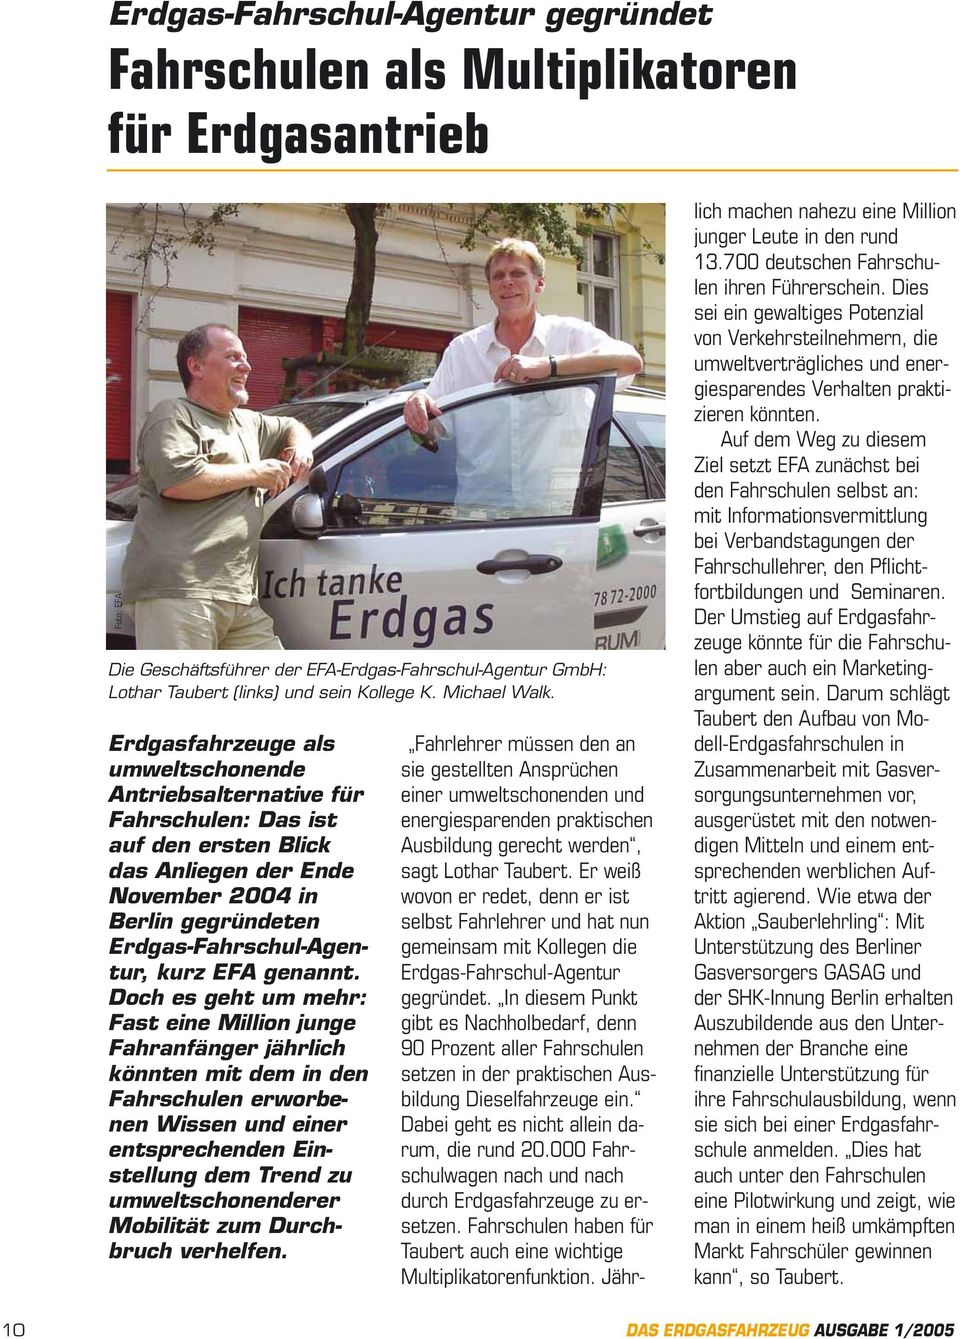 Erdgasfahrzeuge als umweltschonende Antriebsalternative für Fahrschulen: Das ist auf den ersten Blick das Anliegen der Ende November 2004 in Berlin gegründeten Erdgas-Fahrschul-Agentur, kurz EFA